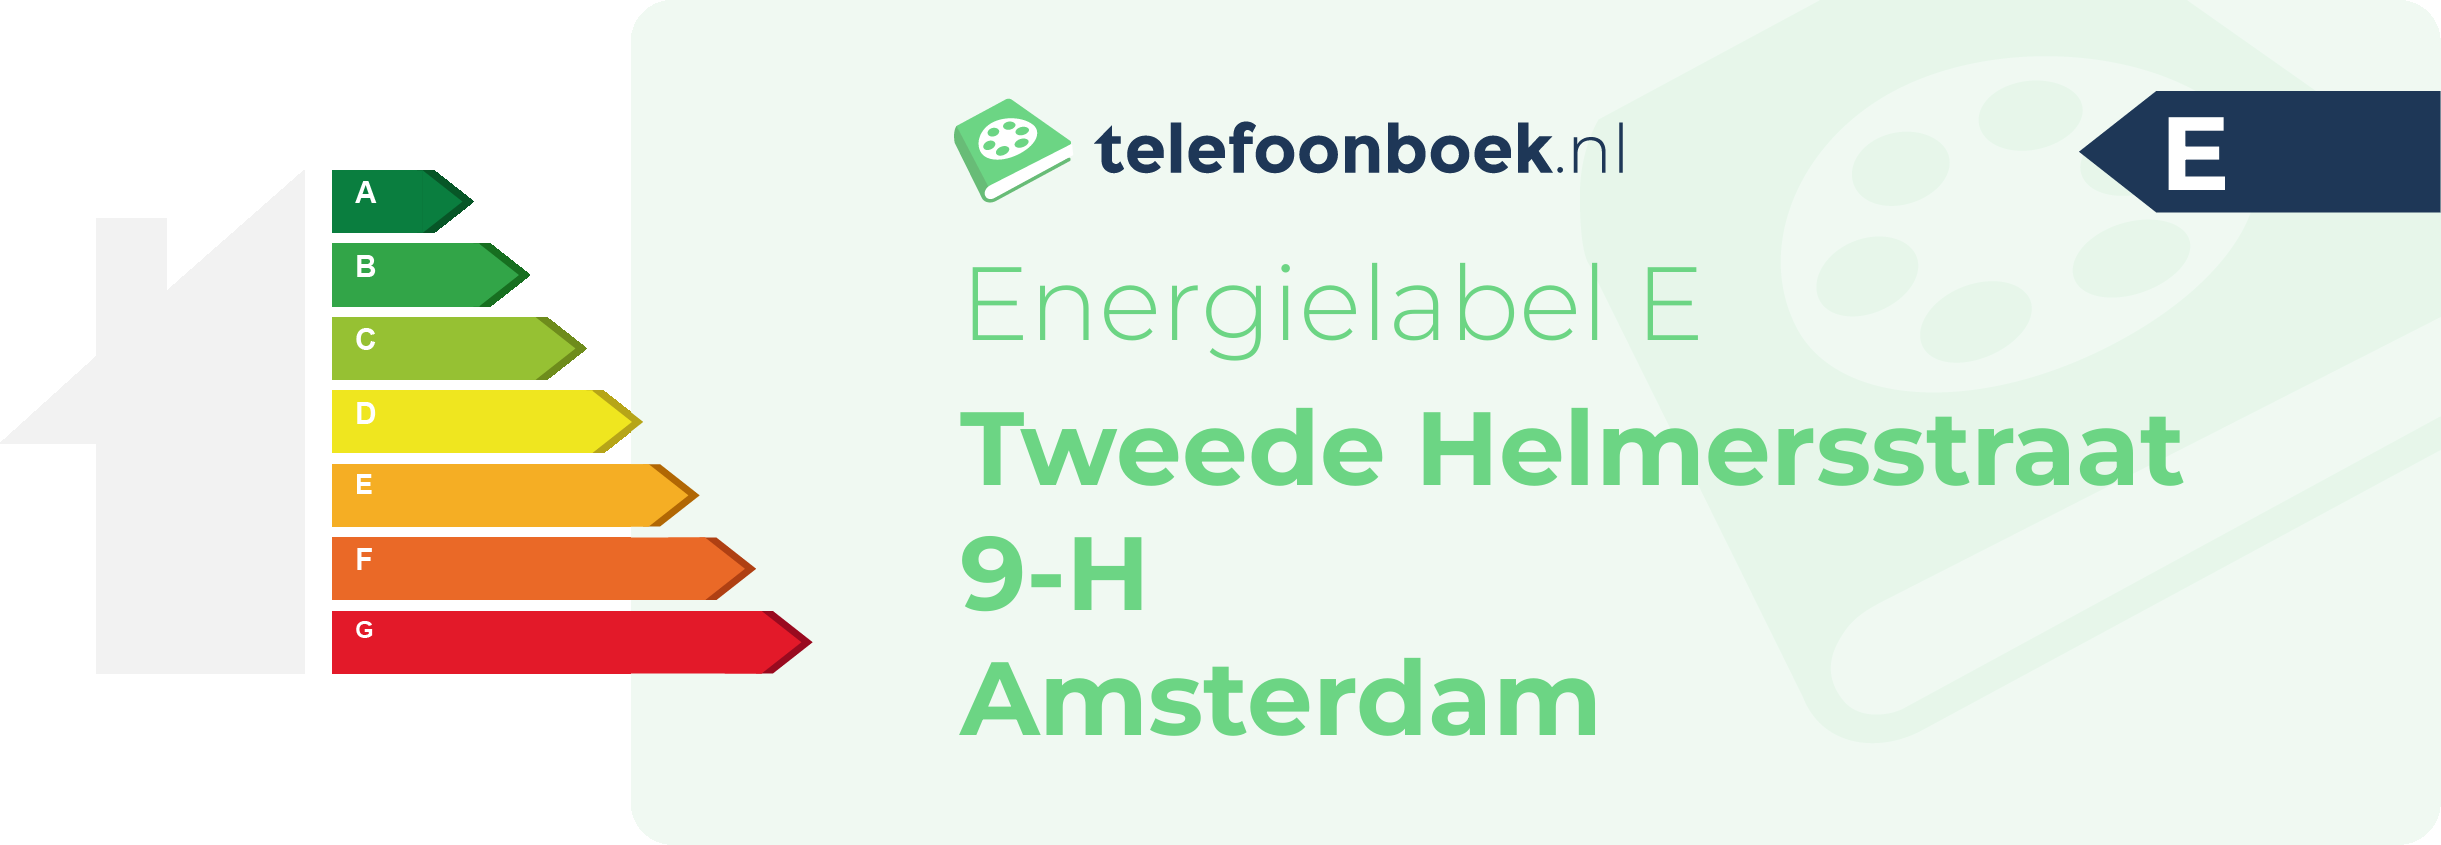 Energielabel Tweede Helmersstraat 9-H Amsterdam